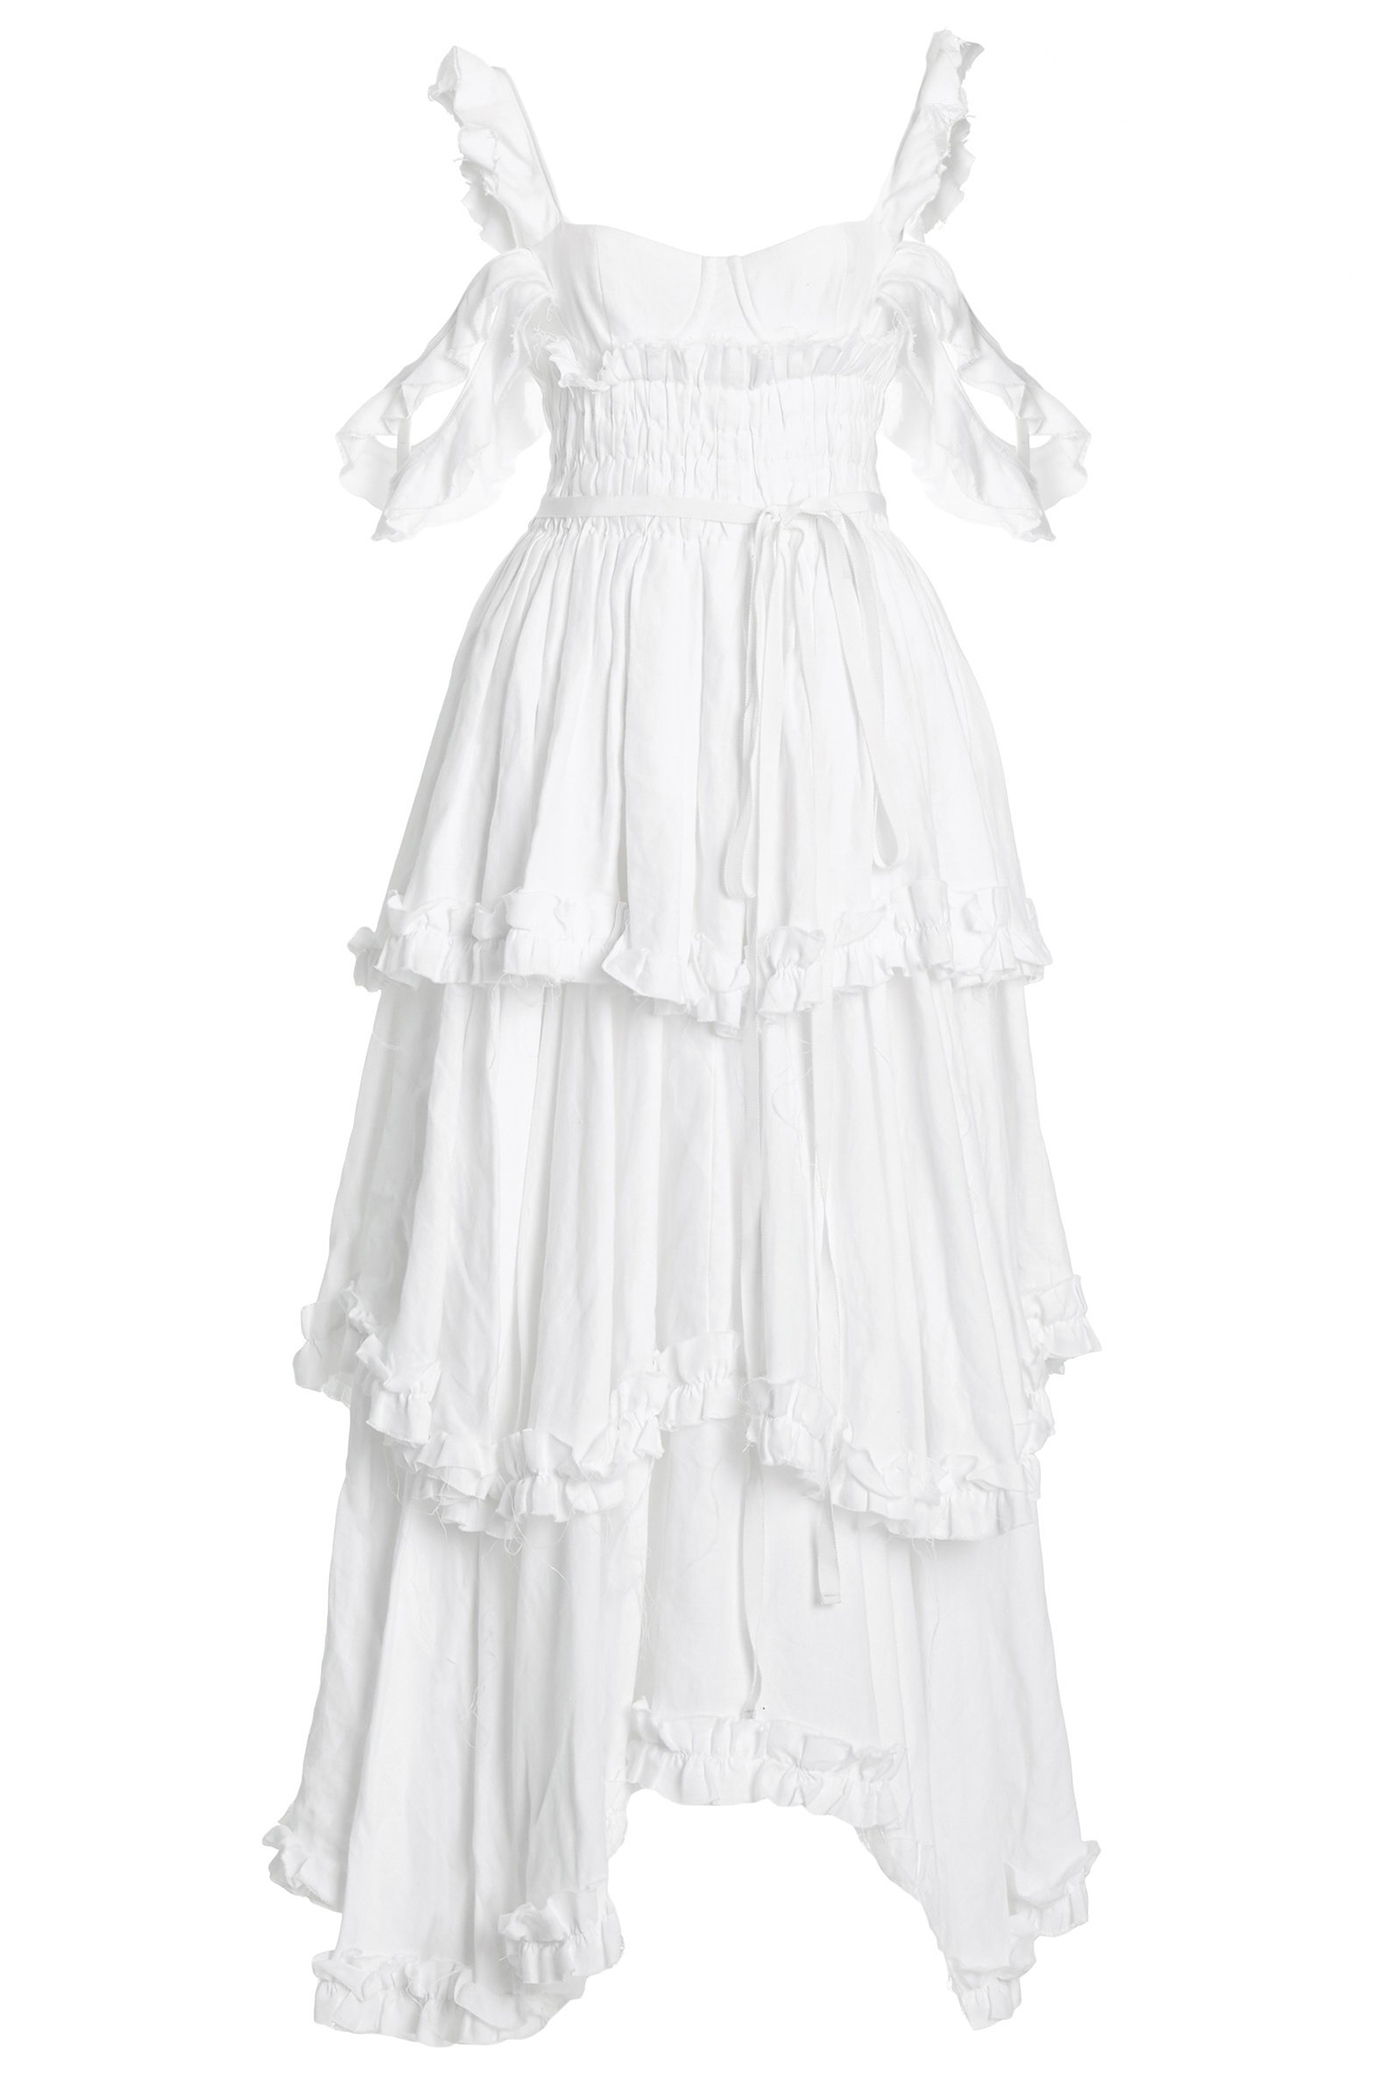 Regencycore white dress